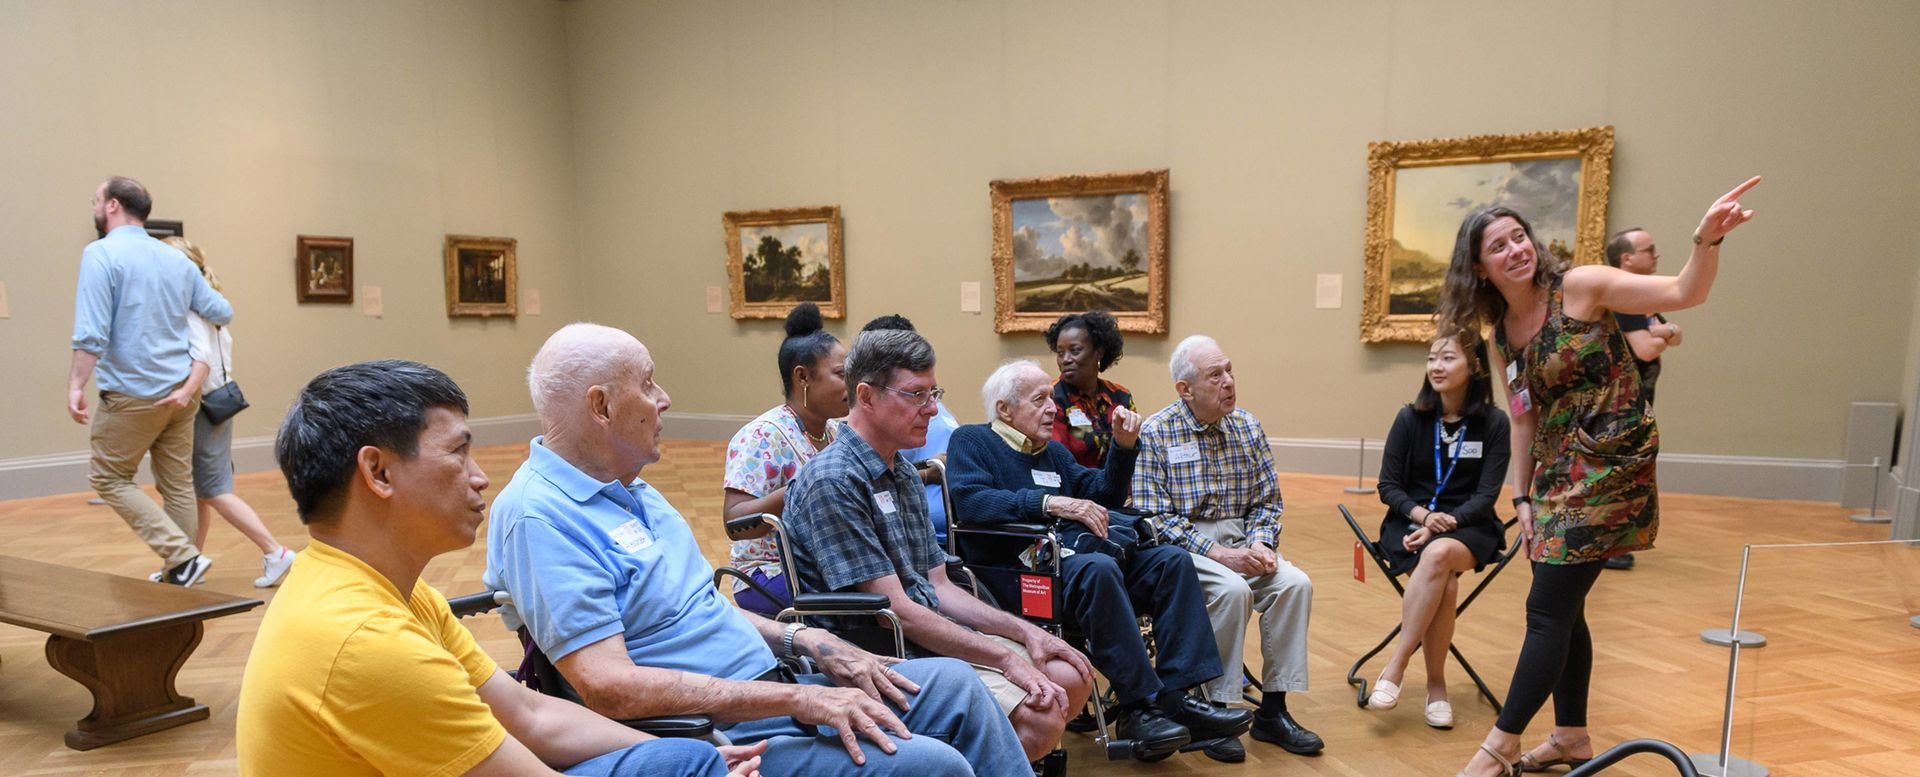 Um grupo em uma galeria ouve uma mulher explicando obras de arte